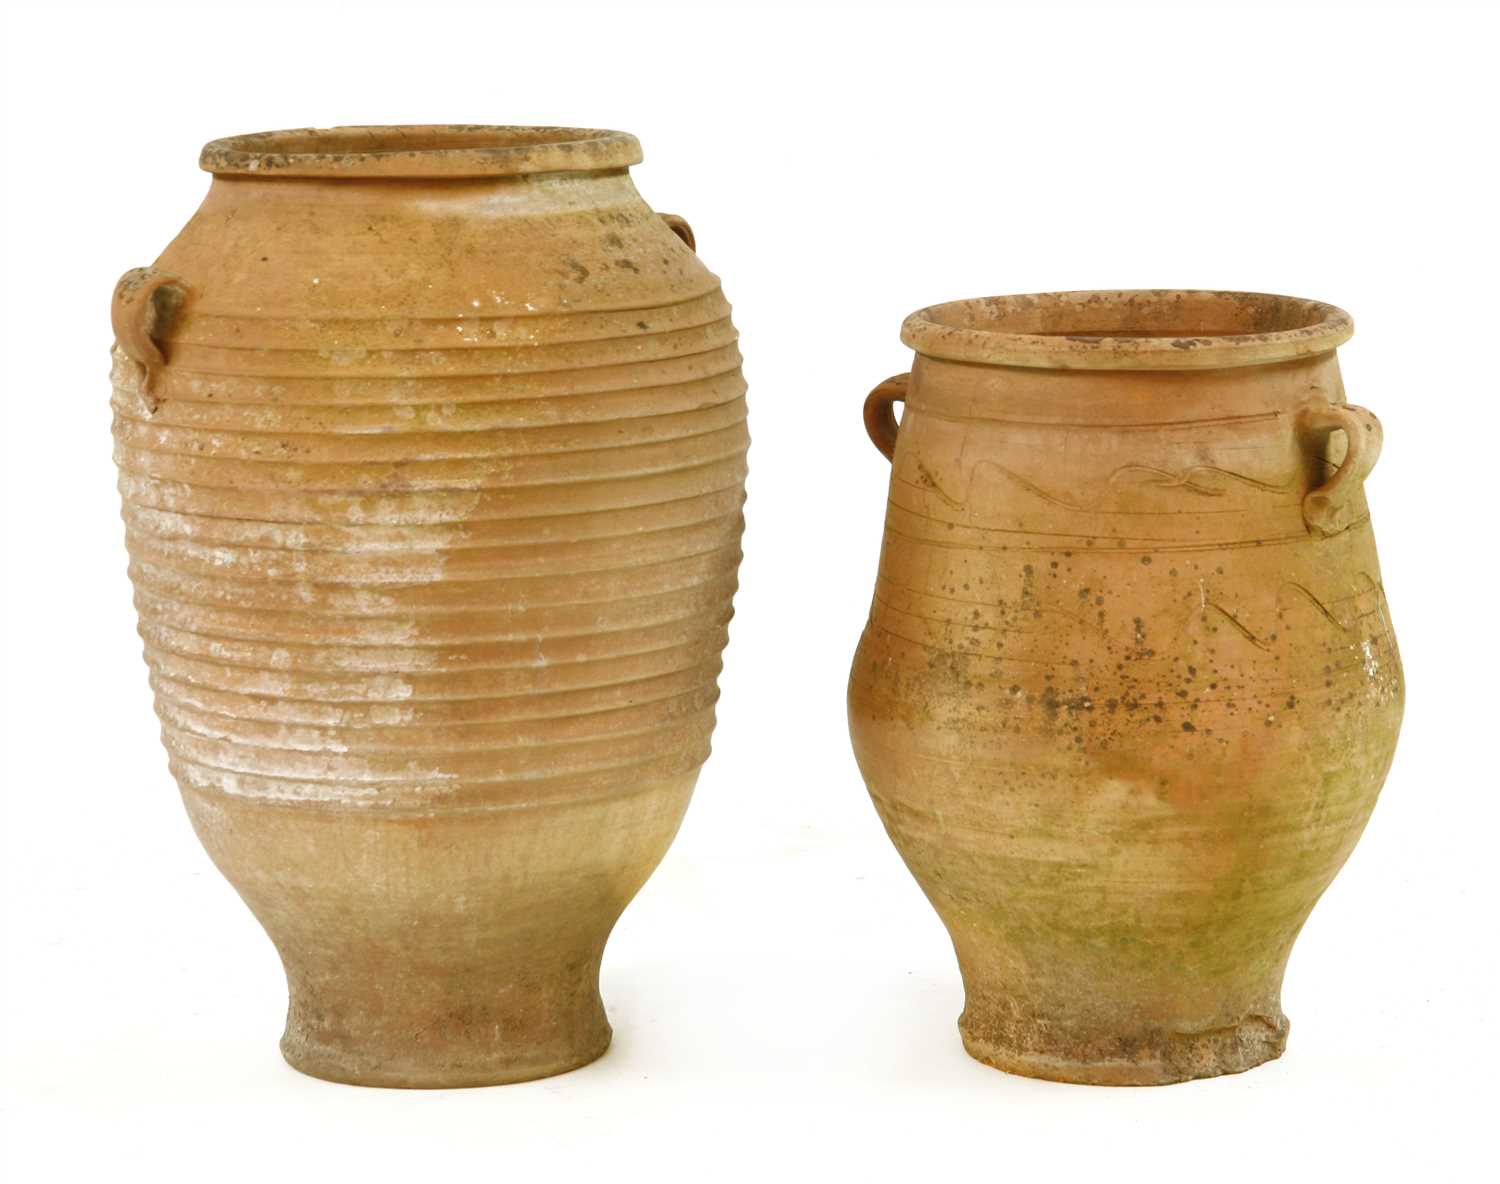 Lot 399 - Two terracotta garden pots